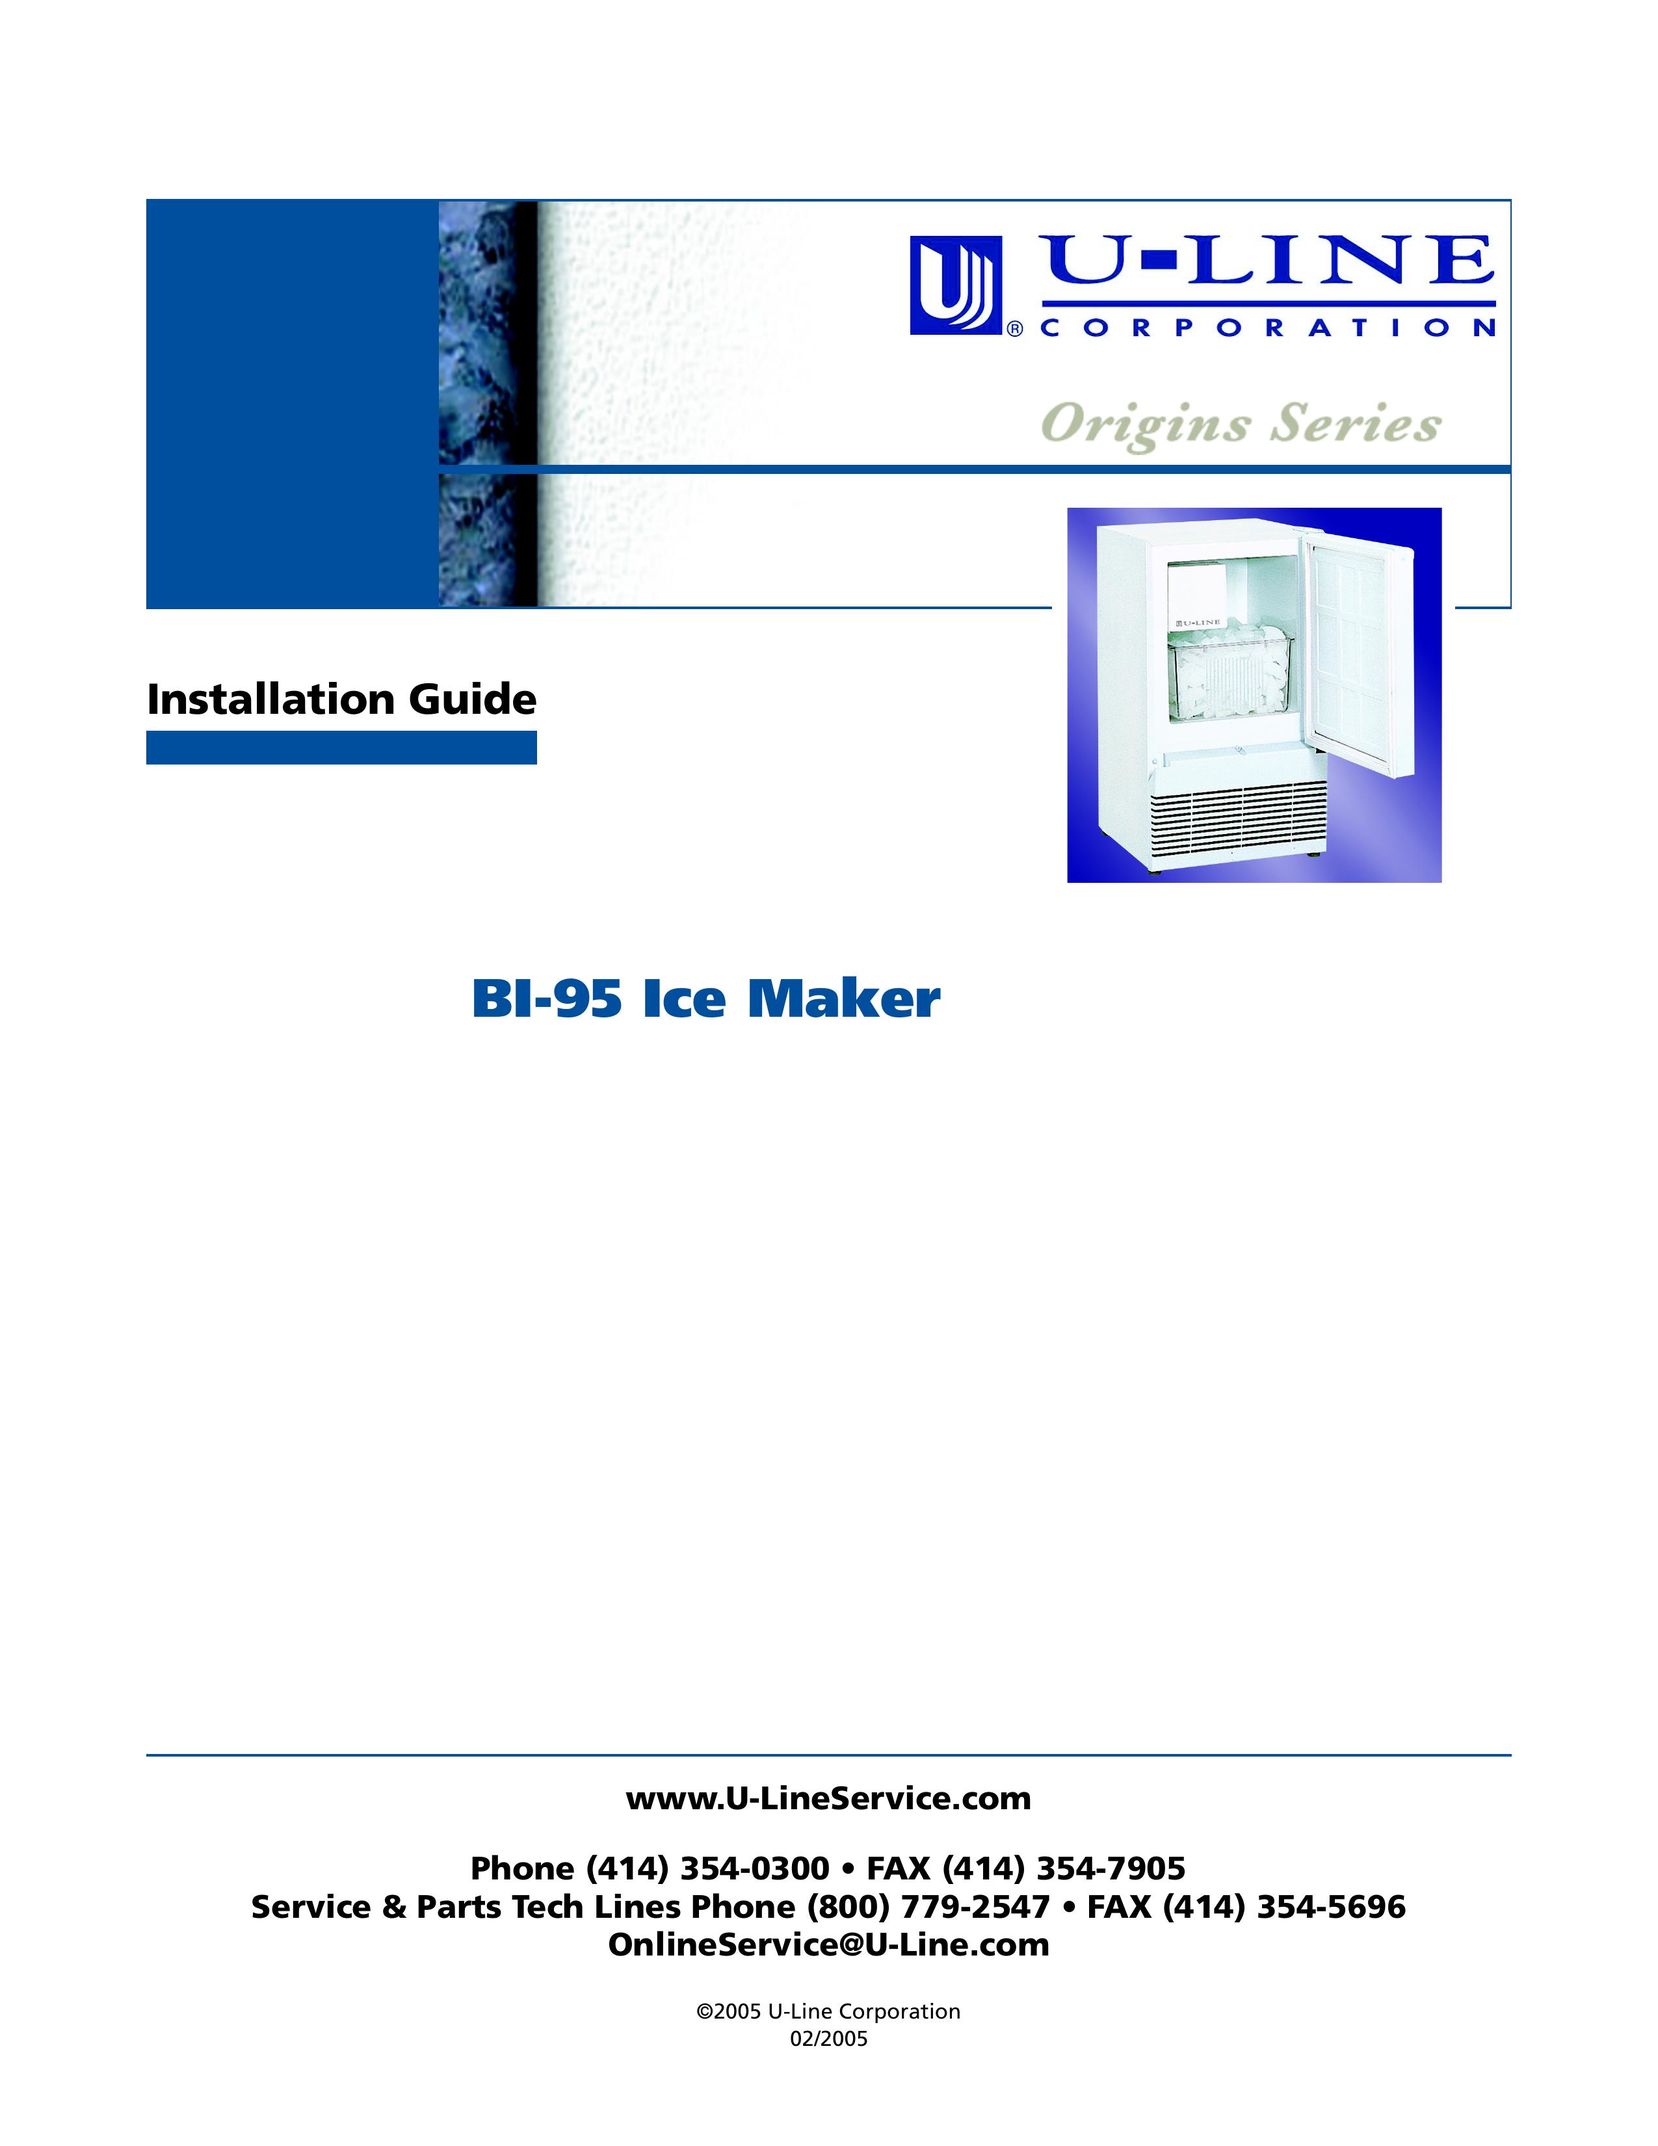 U-Line BI-95 Cell Phone Accessories User Manual